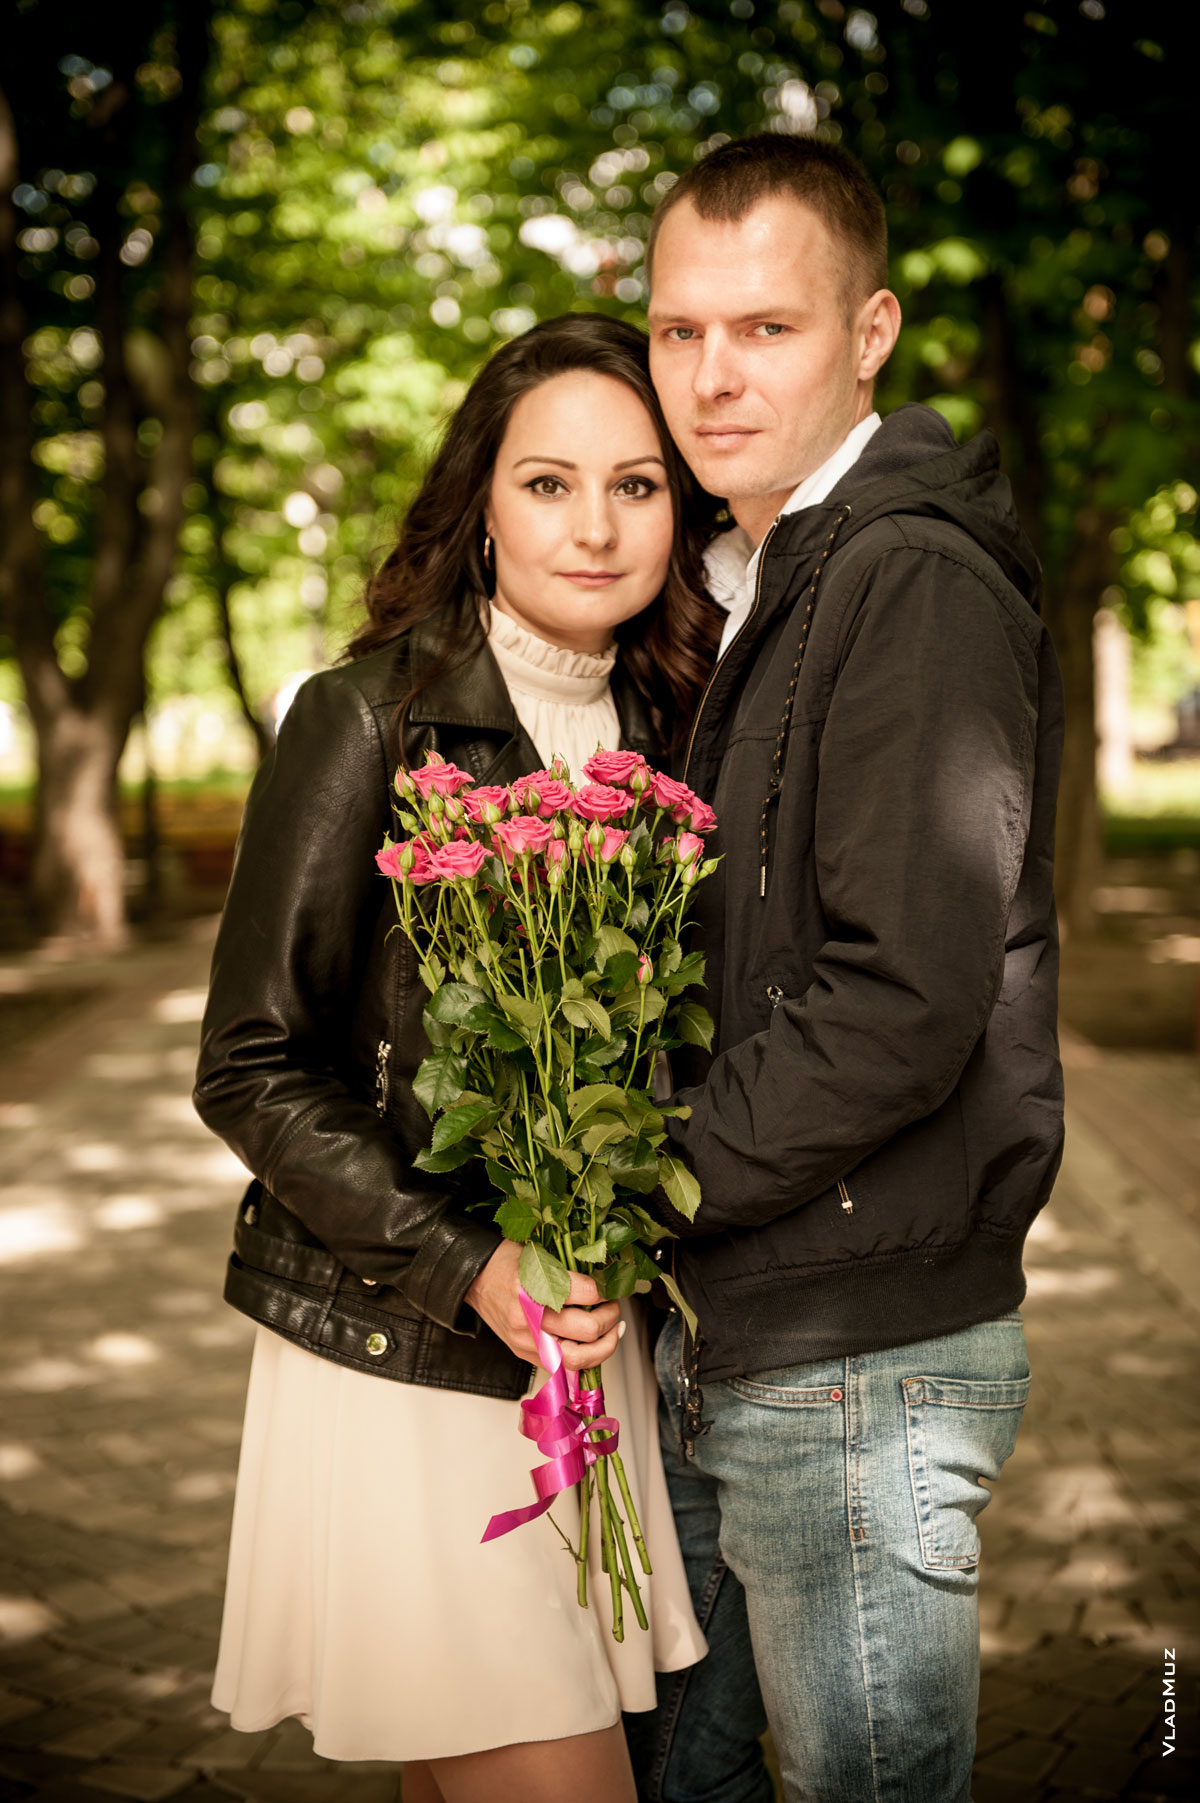 Фото мужчины и девушки с букетом цветов